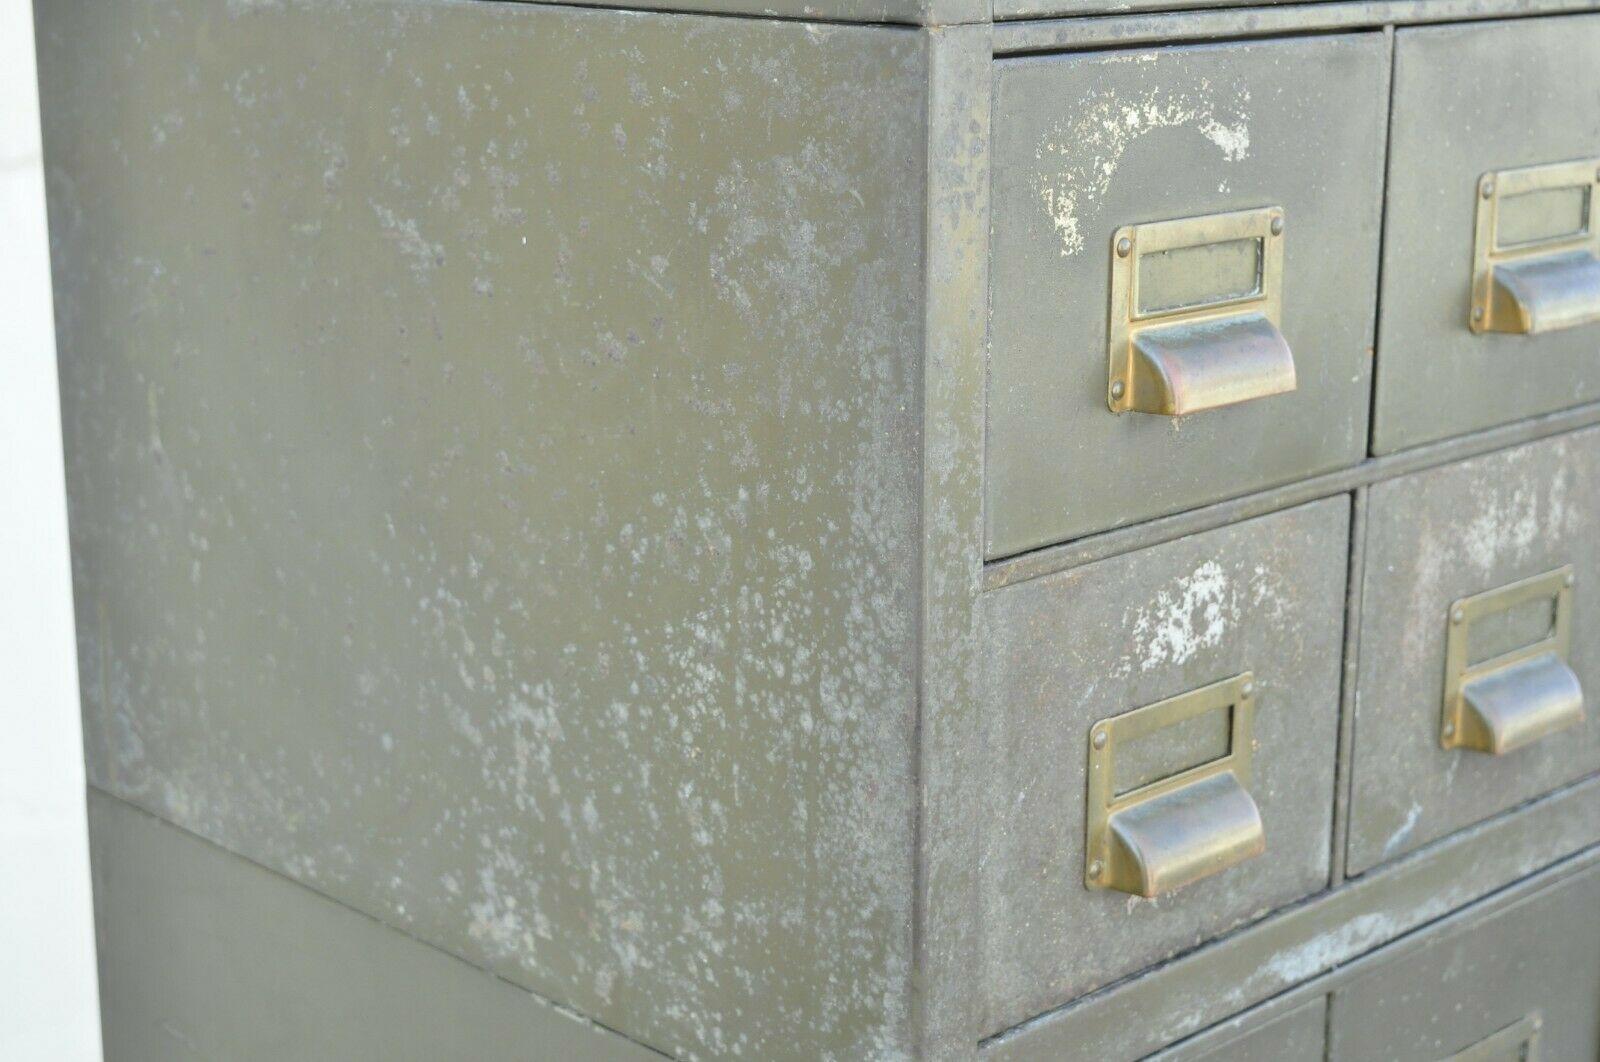 American Vintage Army Green Steel Metal Industrial Narrow Stack File Cabinet by Art Metal